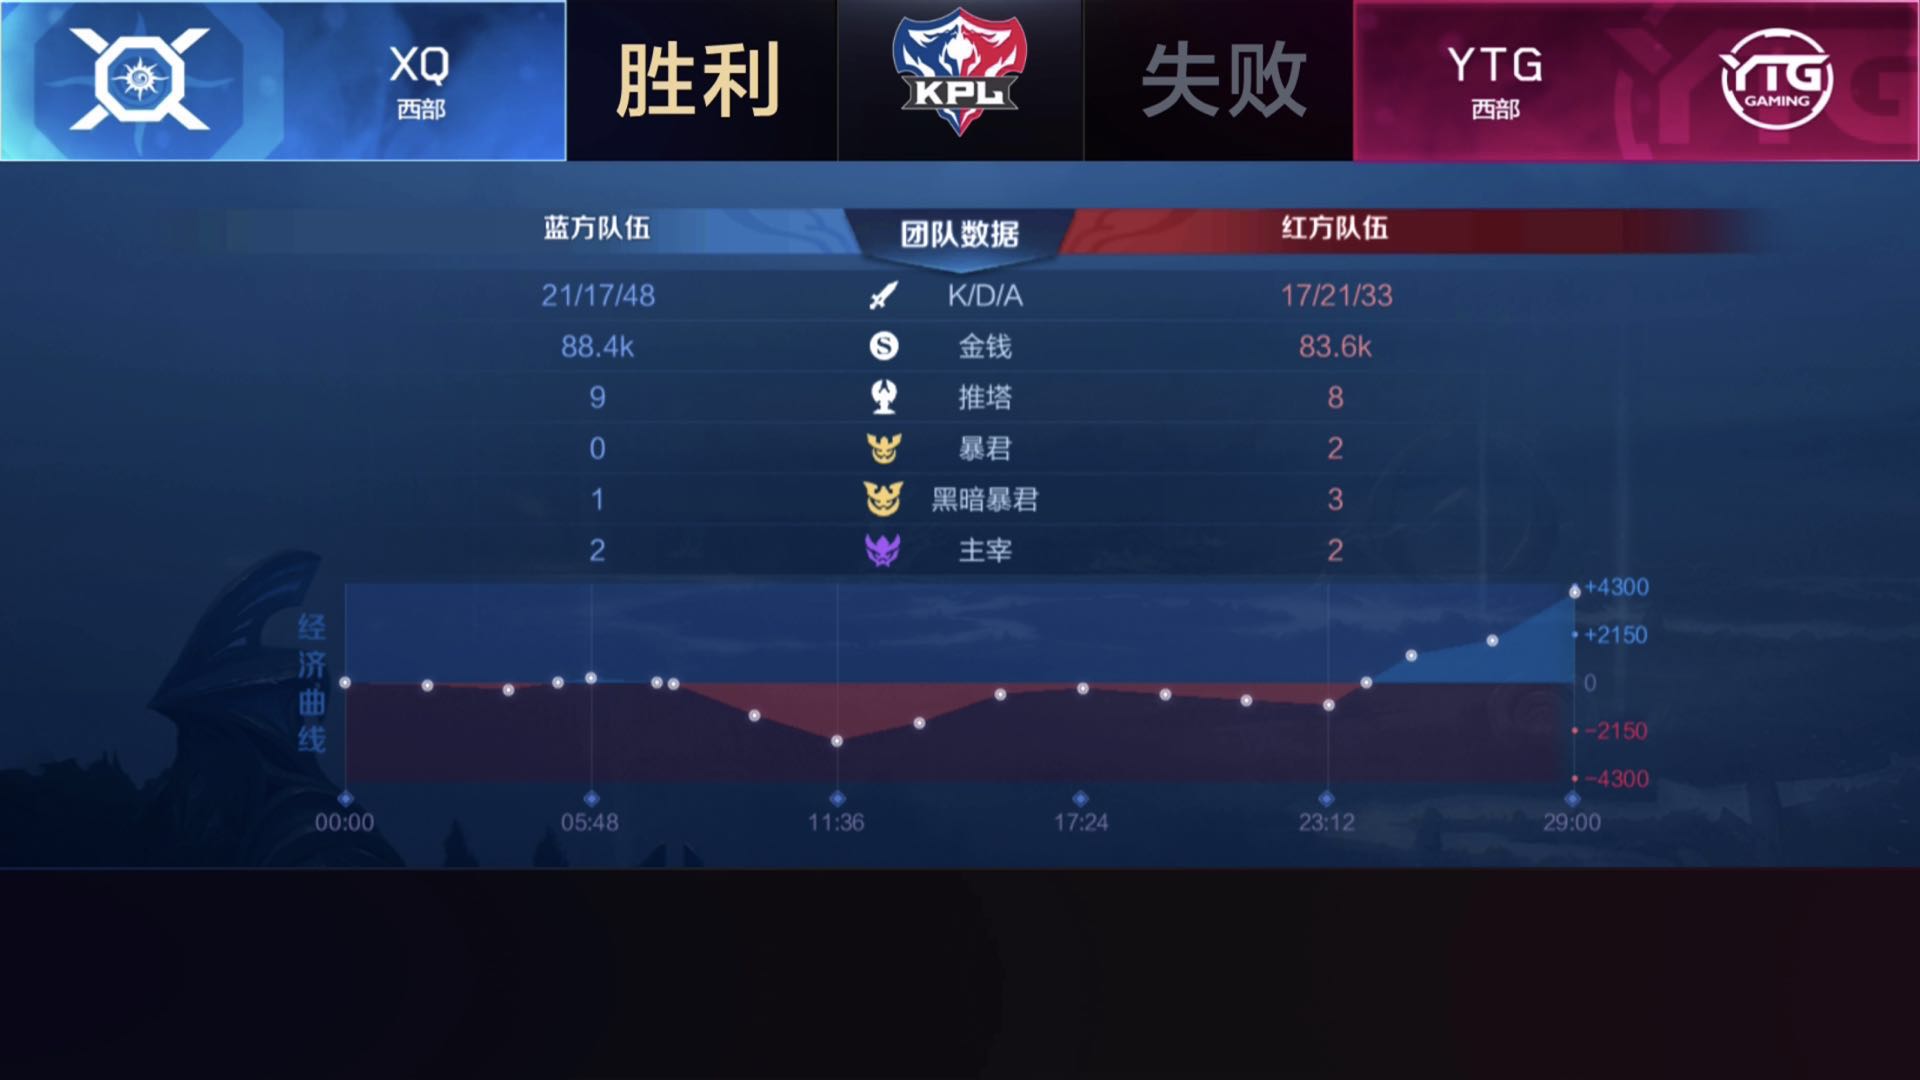 [战报] 晴一拿下三次局最佳 YTG鏖战五局击败XQ